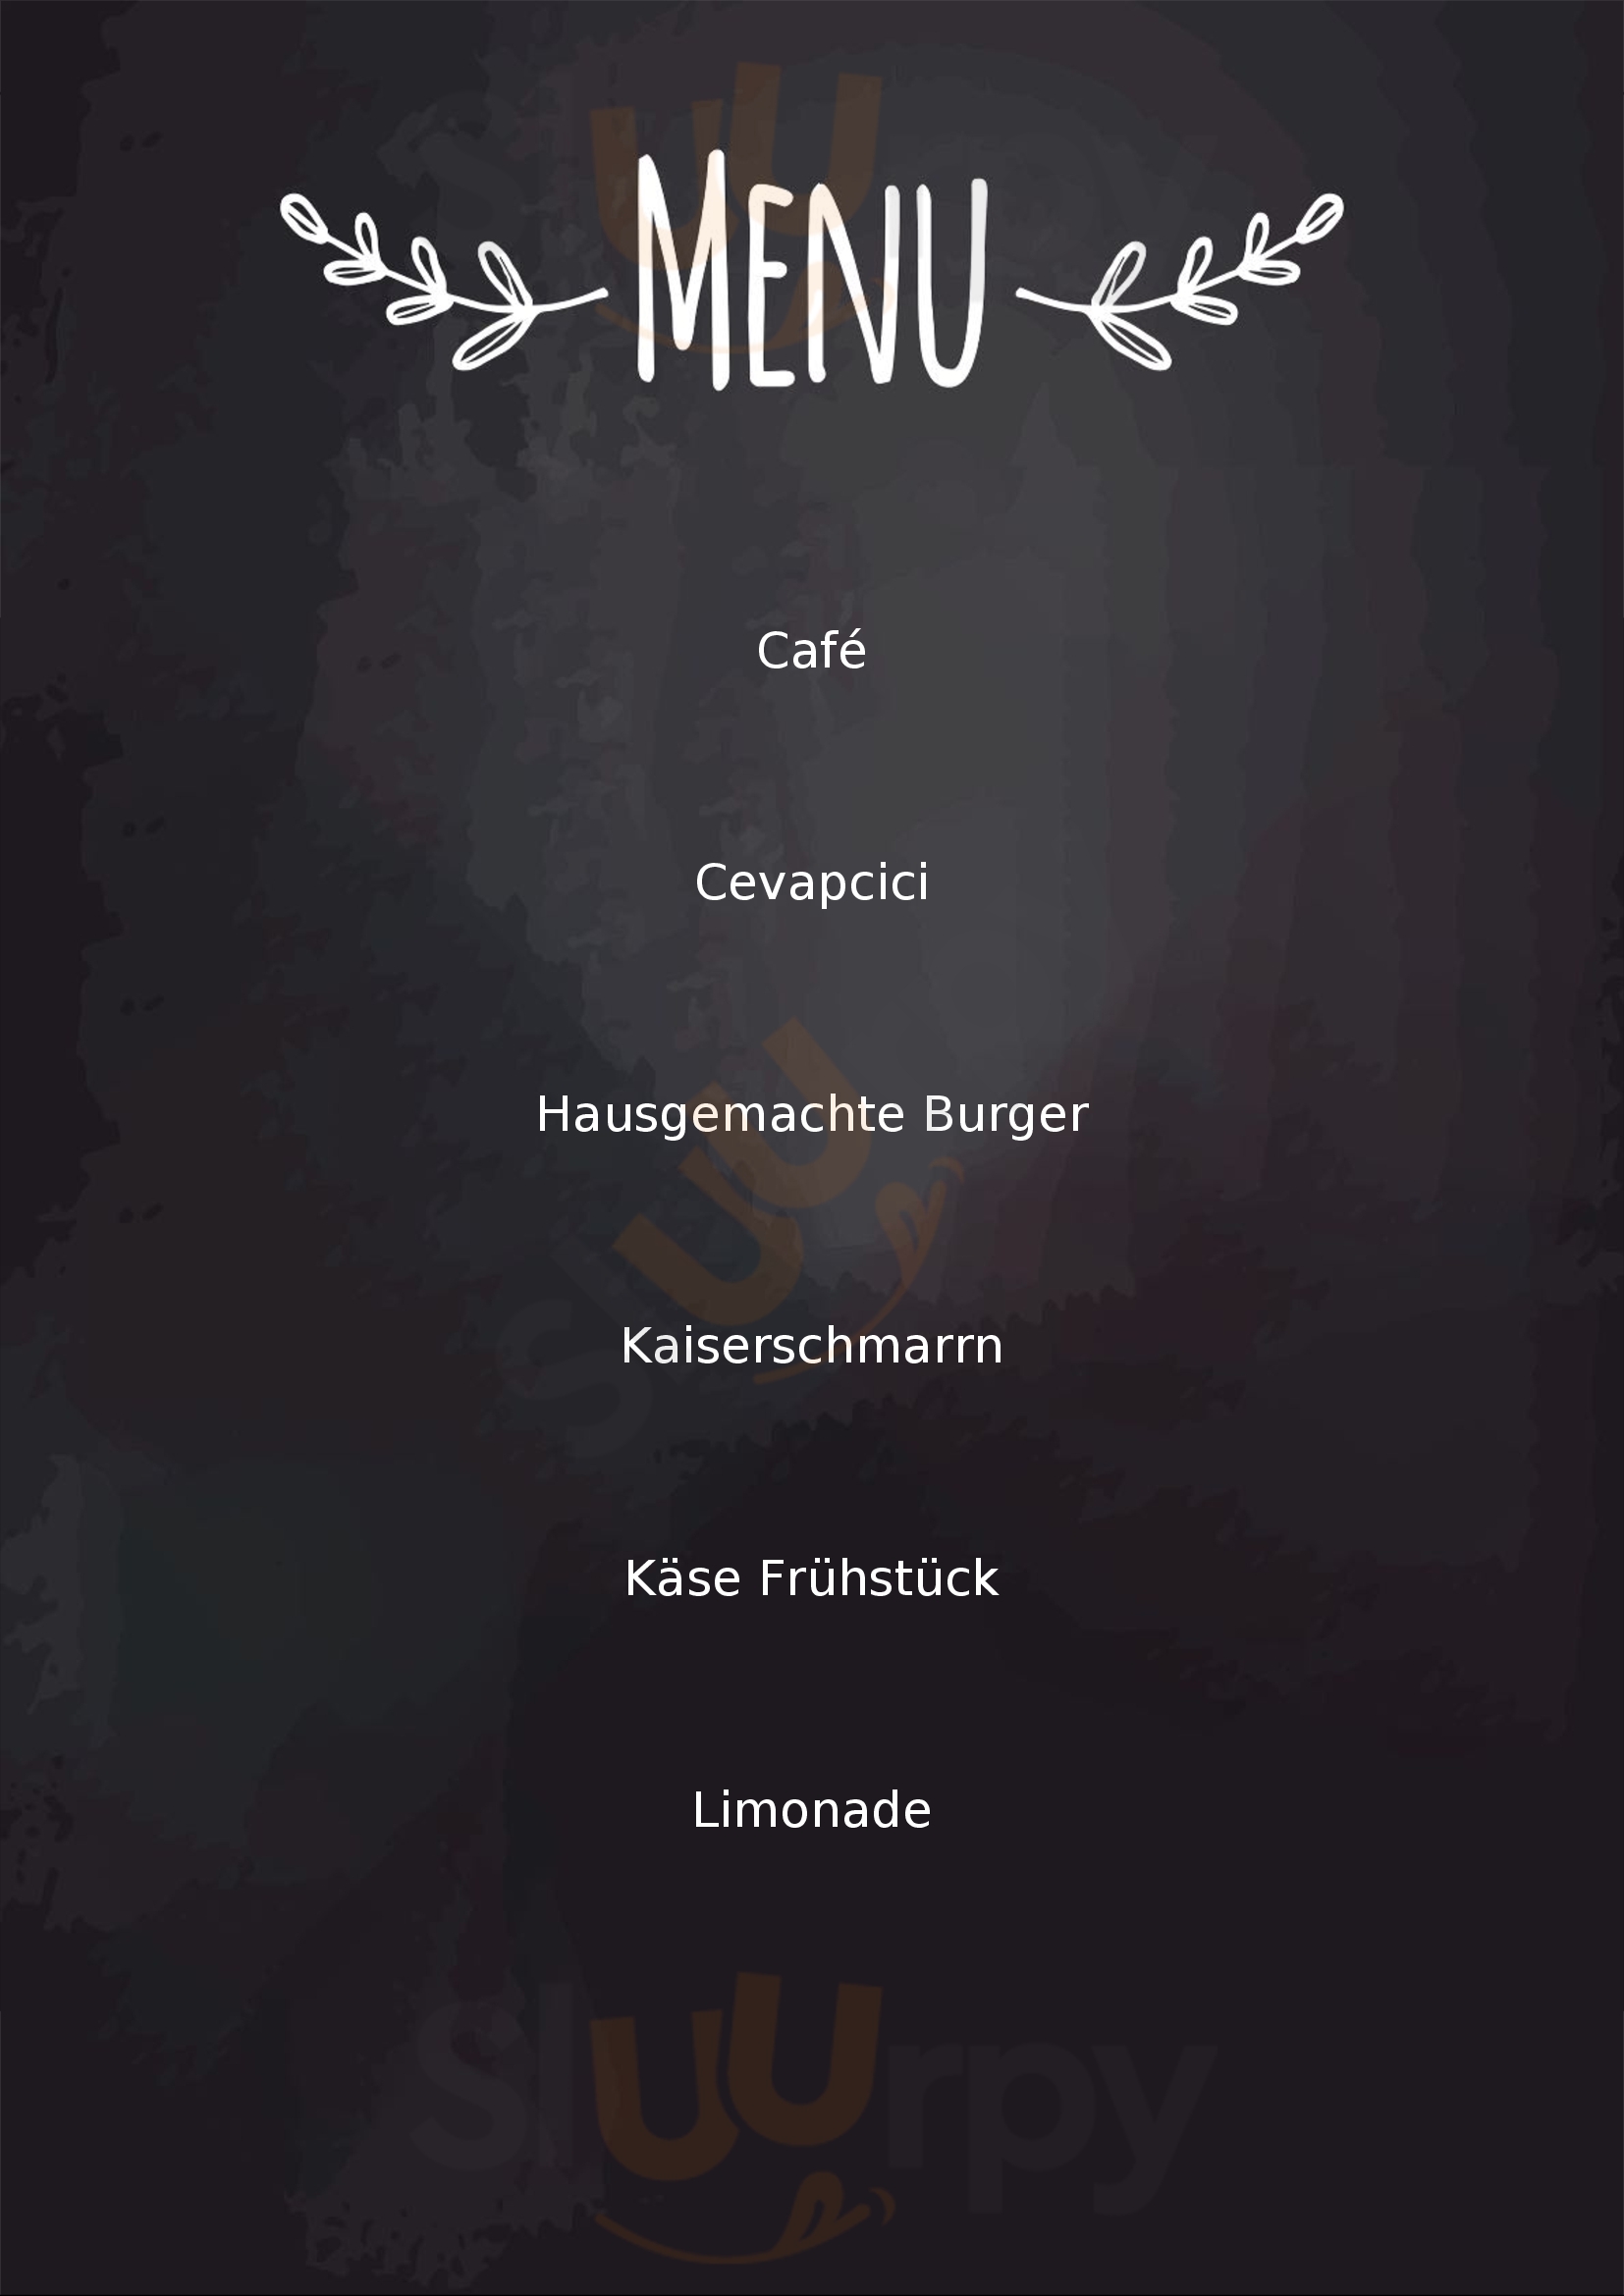 Cafe Konditorei Naschkätzchen Wien Menu - 1